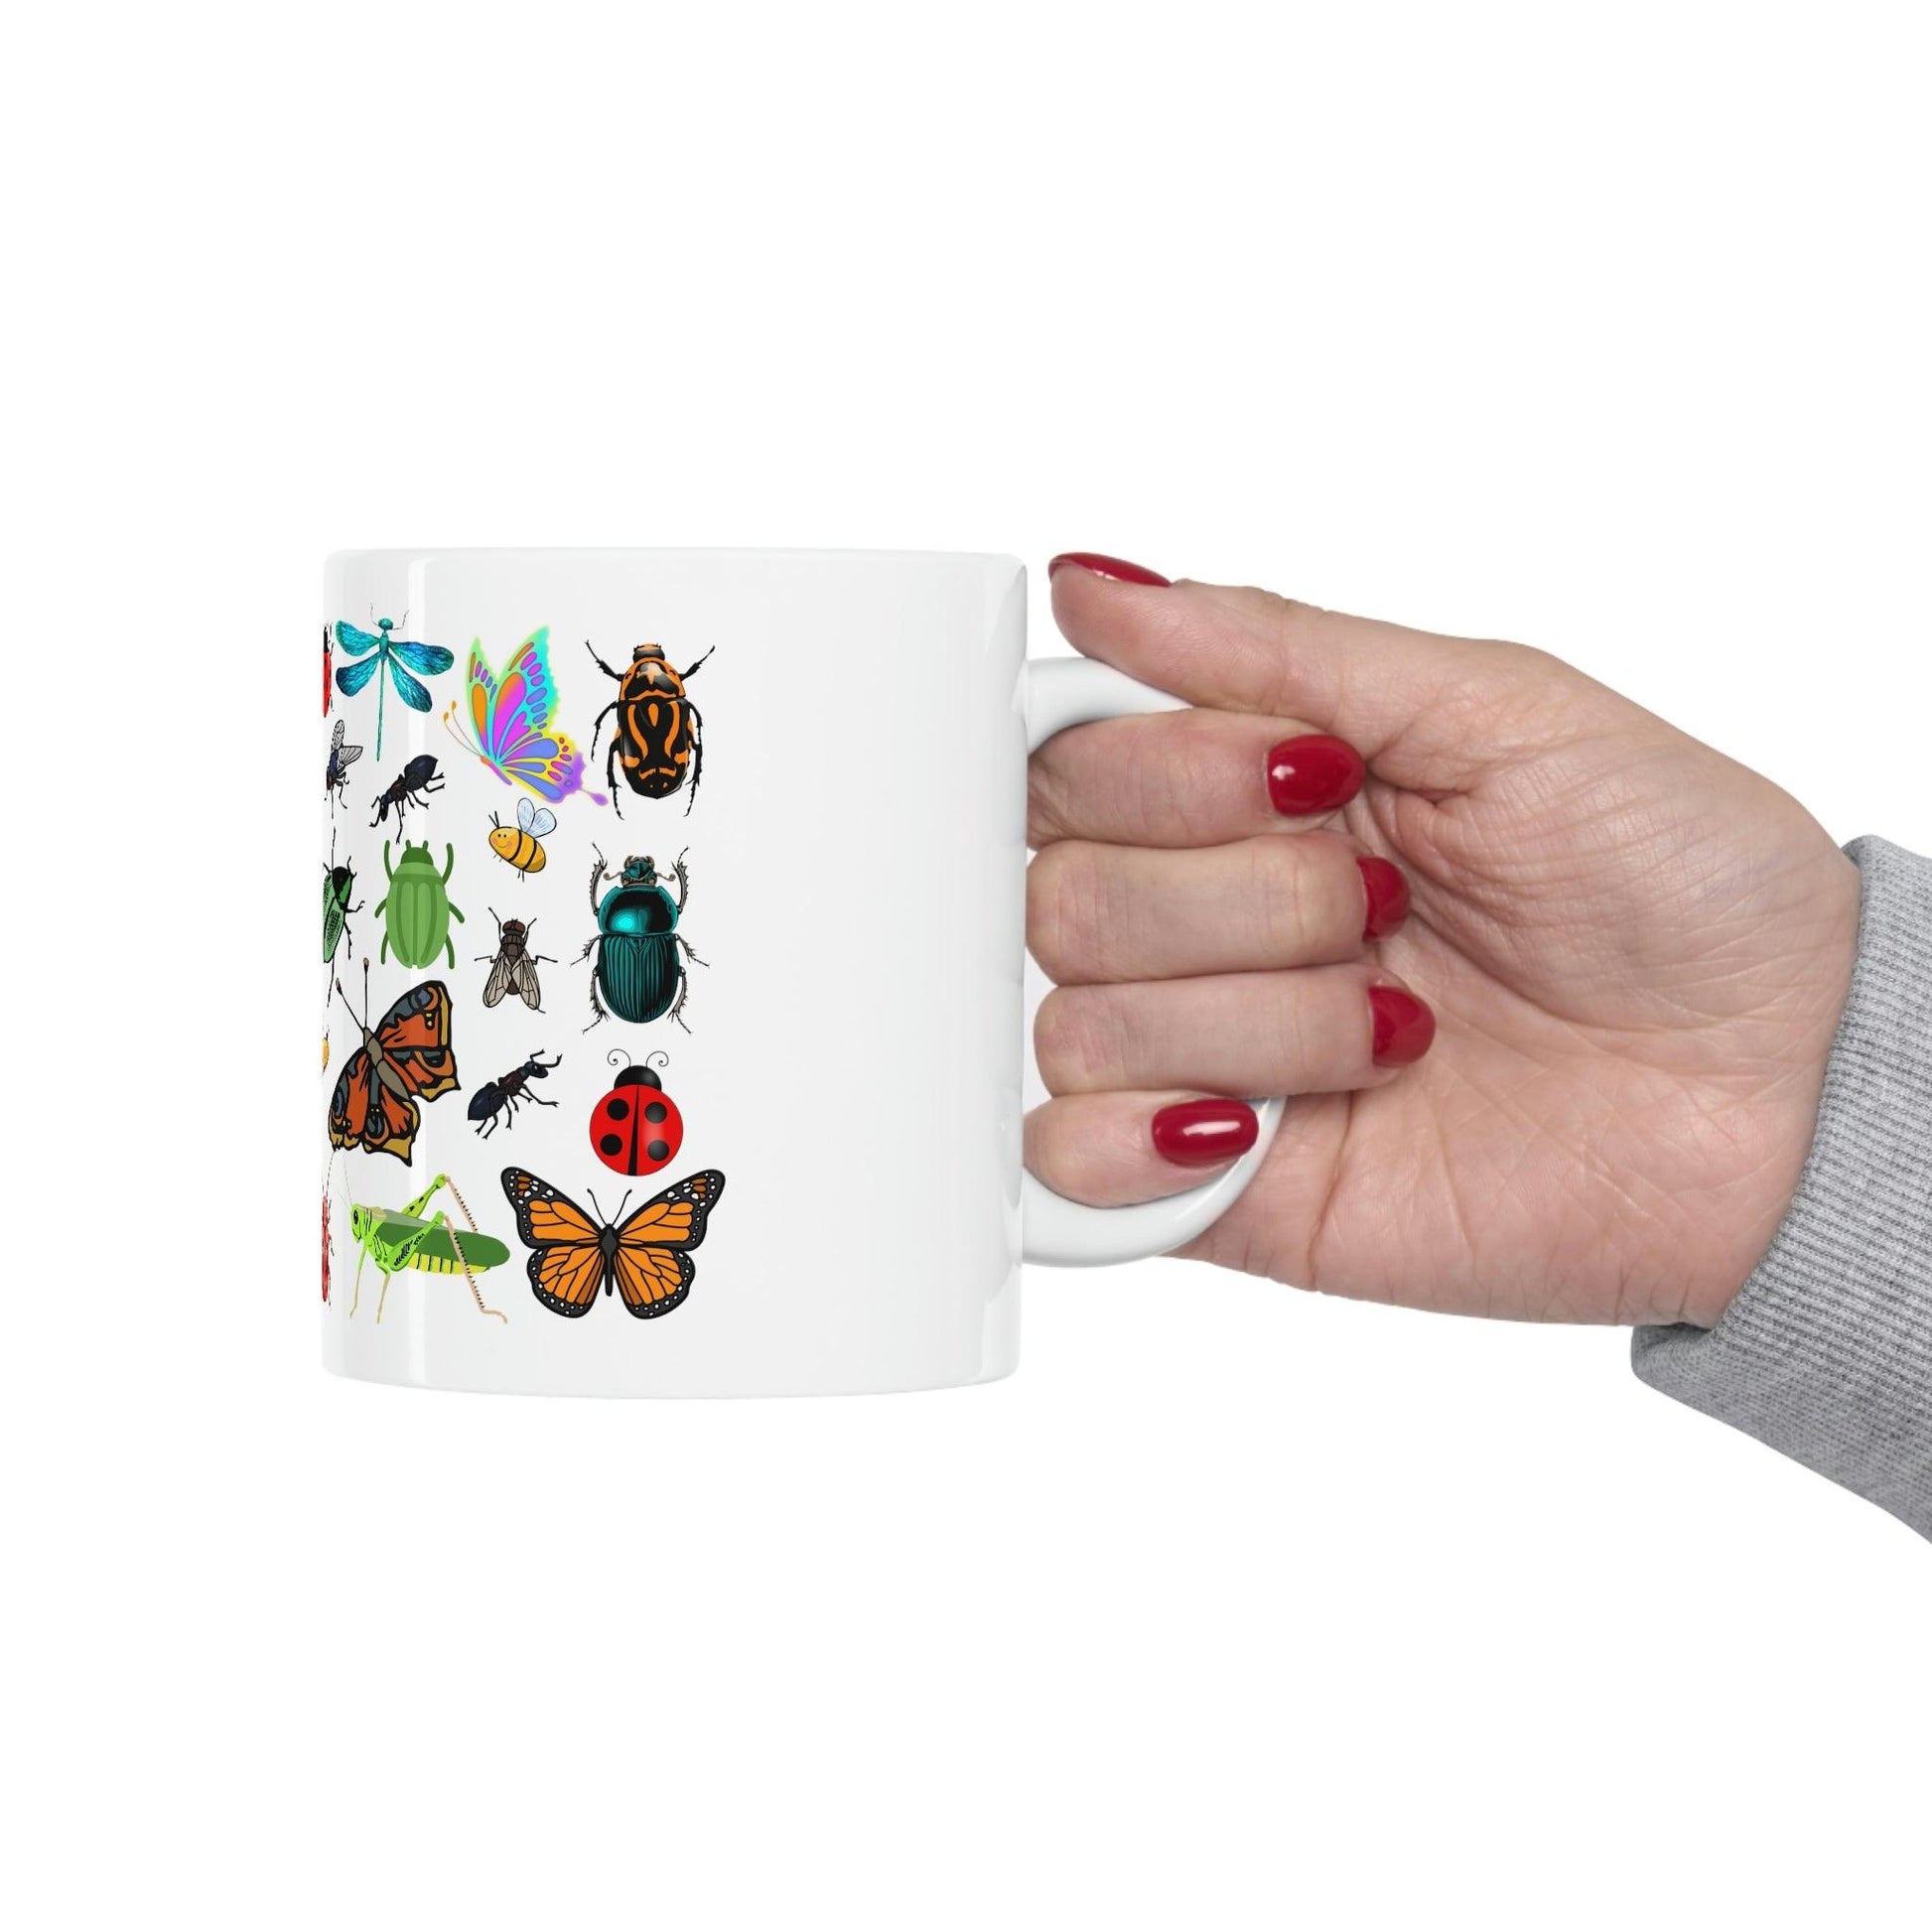 Bugs Mug, bug lover mug, gift for plant lovers, coffee mug for her, hot cocoa mug, gift for coffee lover - Giftsmojo